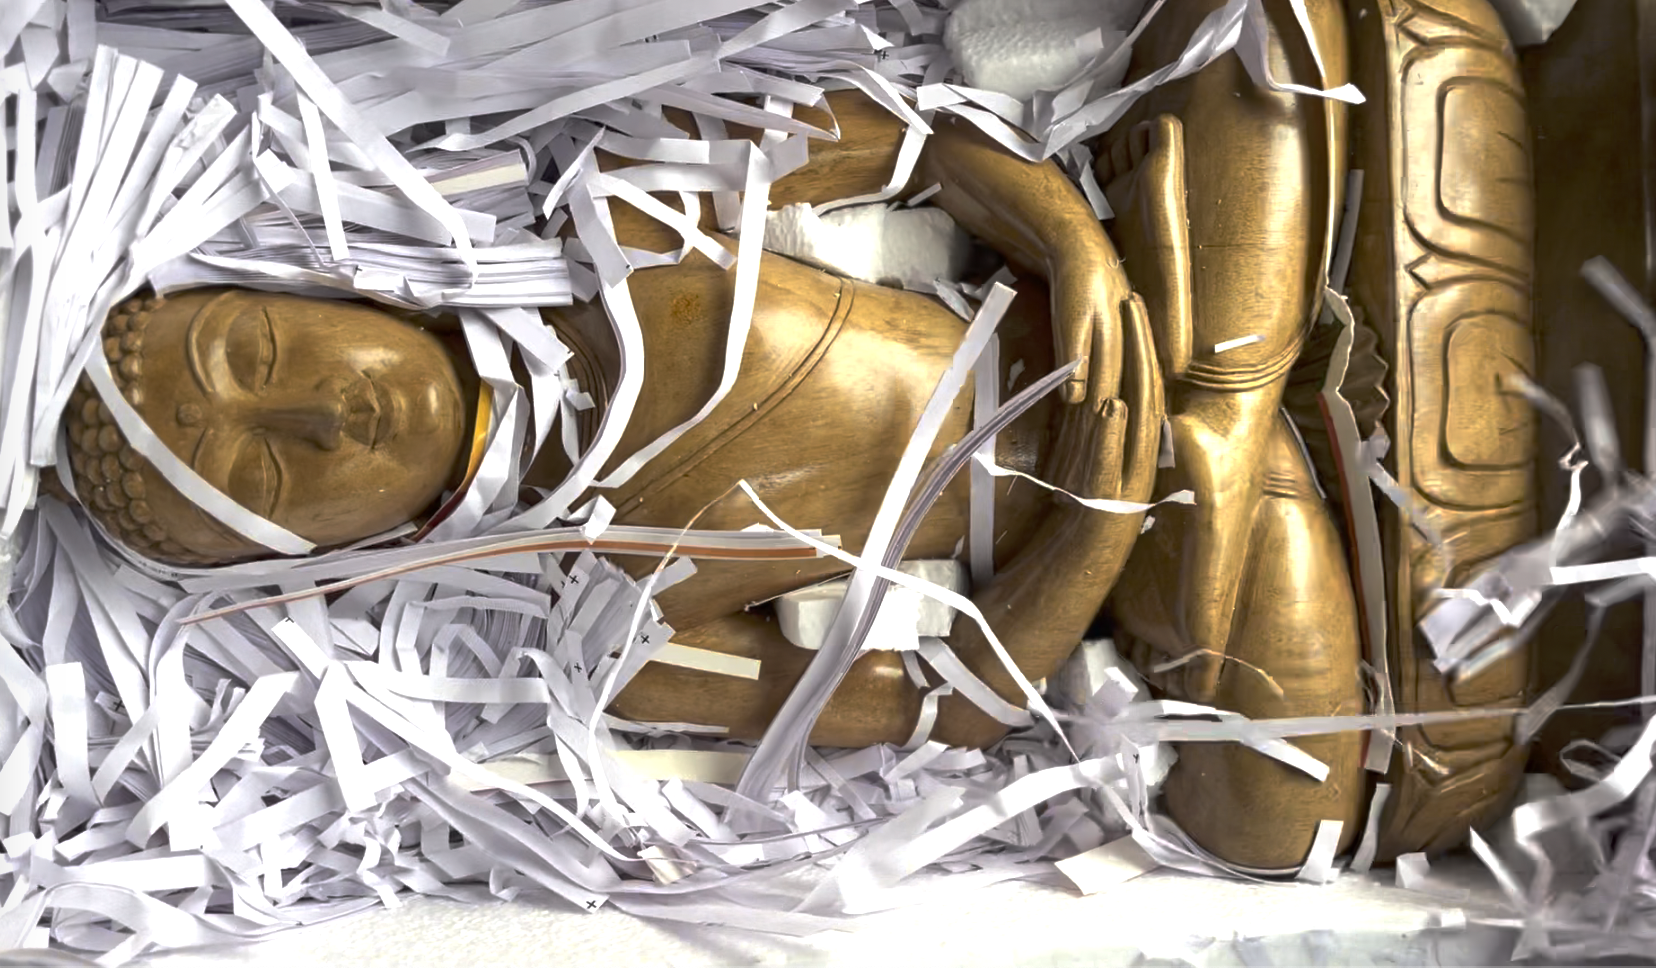 boeddha in de doos